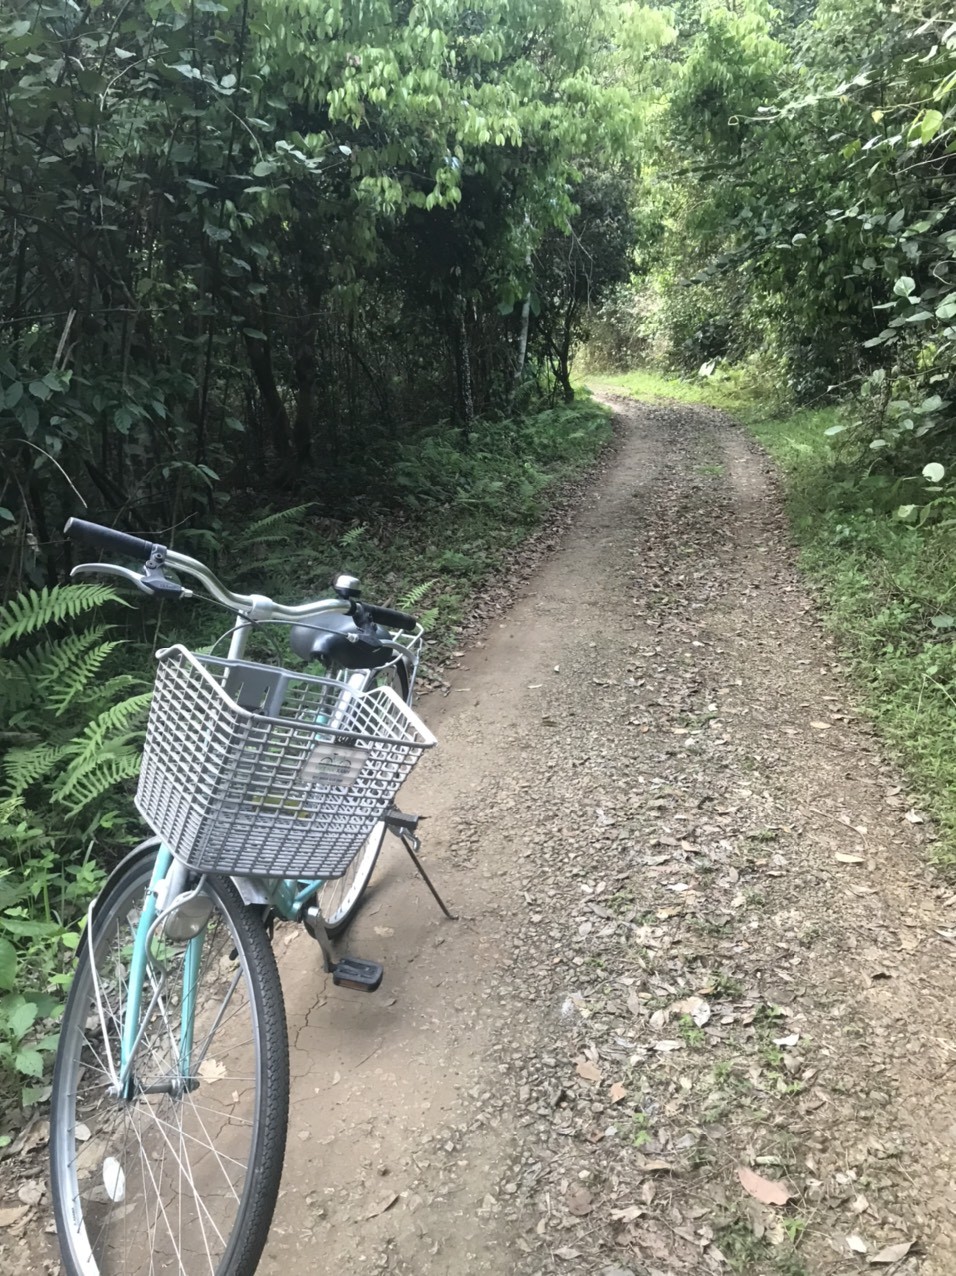 
Để khám phá Việt Hải, phương tiện xe đạp sẽ thuận lợi nhất. Con đường dẫn vào ngôi nhà cổ theo sự chỉ dẫn của người dân đảo, rất ít khách du lịch "mò" tới địa điểm này.
